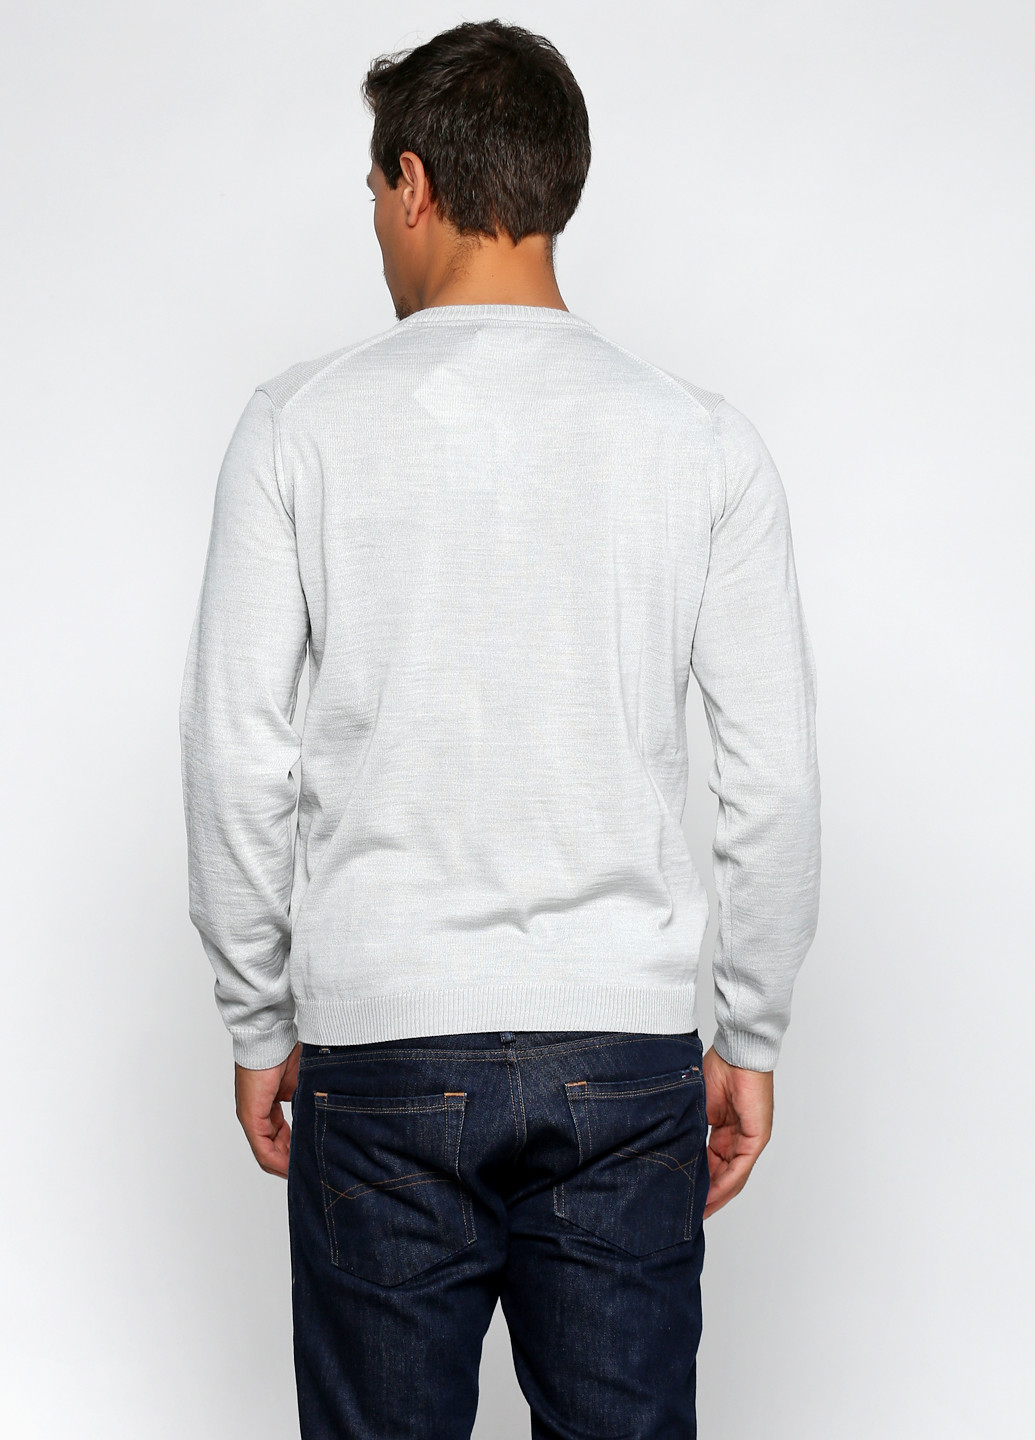 Светло-серый демисезонный пуловер пуловер Belika